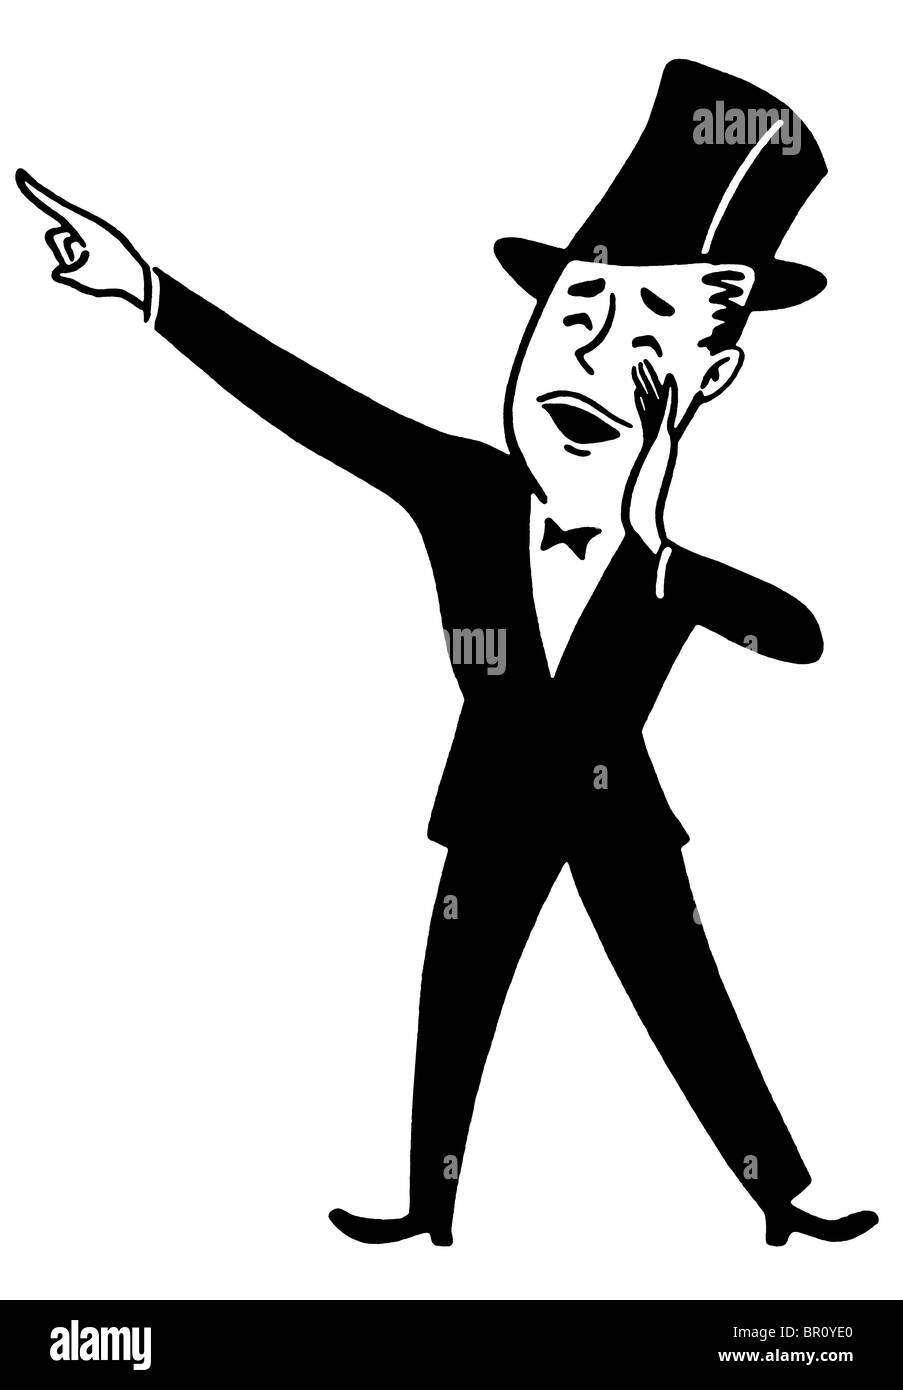 Une version noir et blanc d'un cartoon style dessin d'un homme en haut de forme et queue faire une annonce Banque D'Images